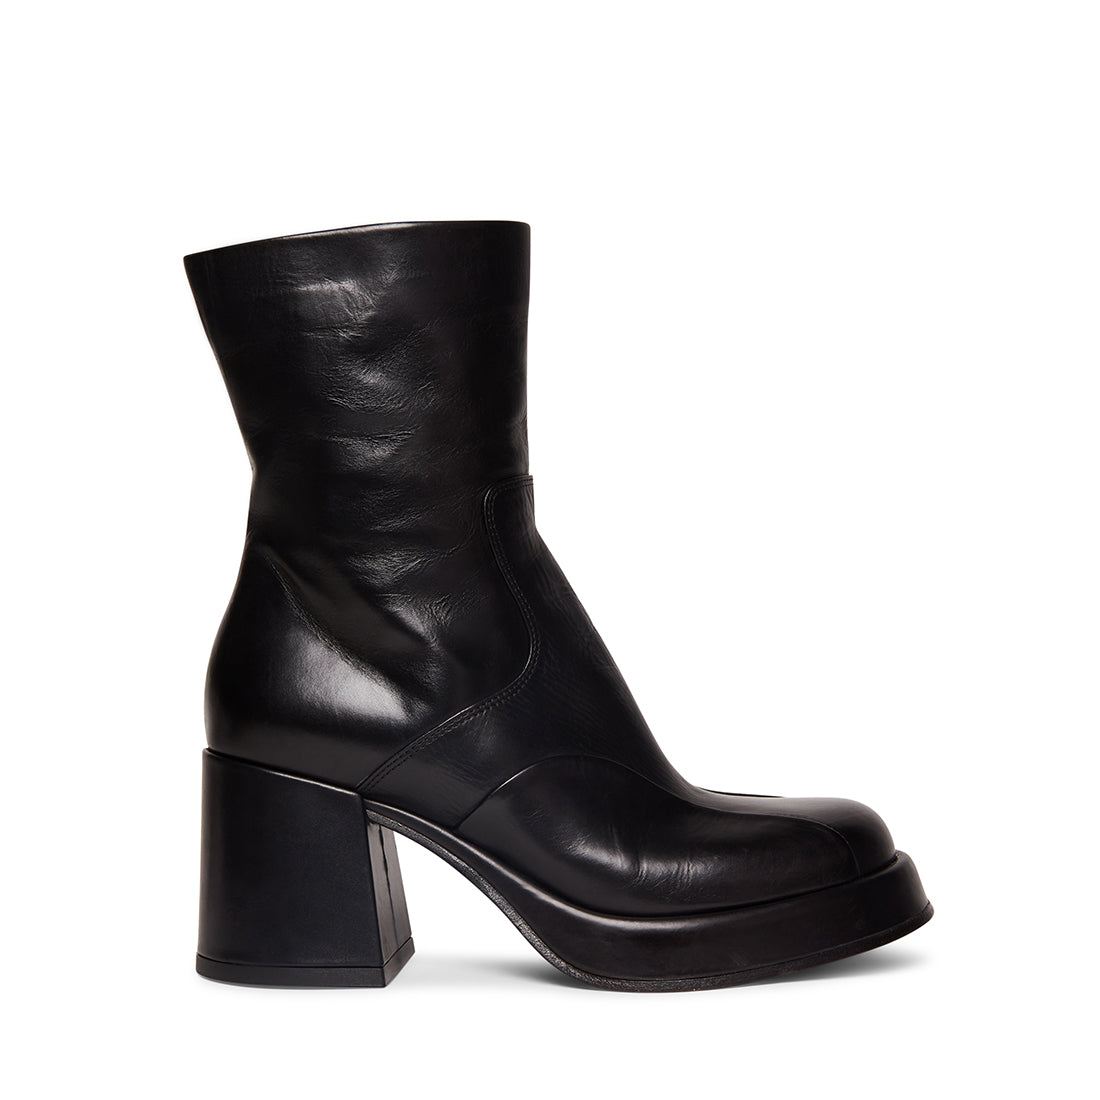 BERNADETTE Black Leather Platform Block Heel Bootie | Women's Booties ...